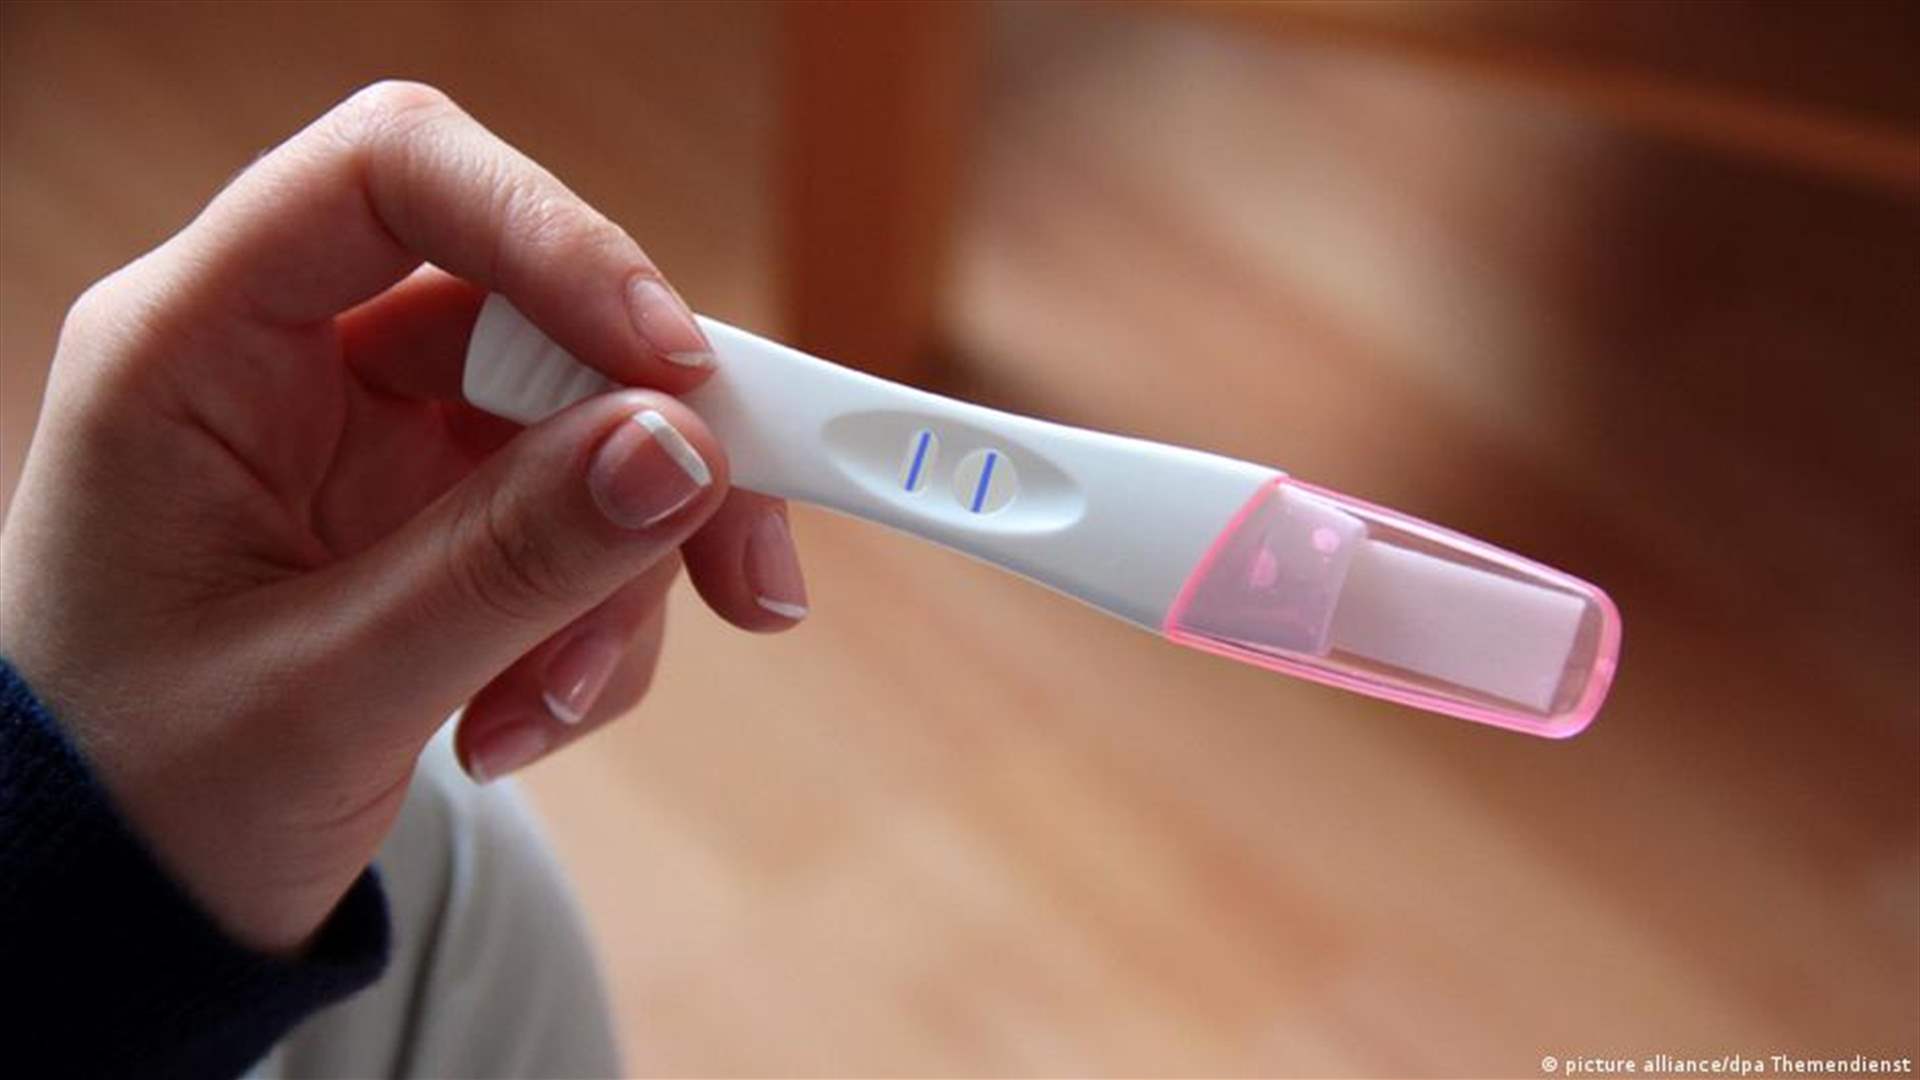 بايدن يعتزم توقيع مرسوم يوسع إمكانية الحصول على وسائل منع الحمل